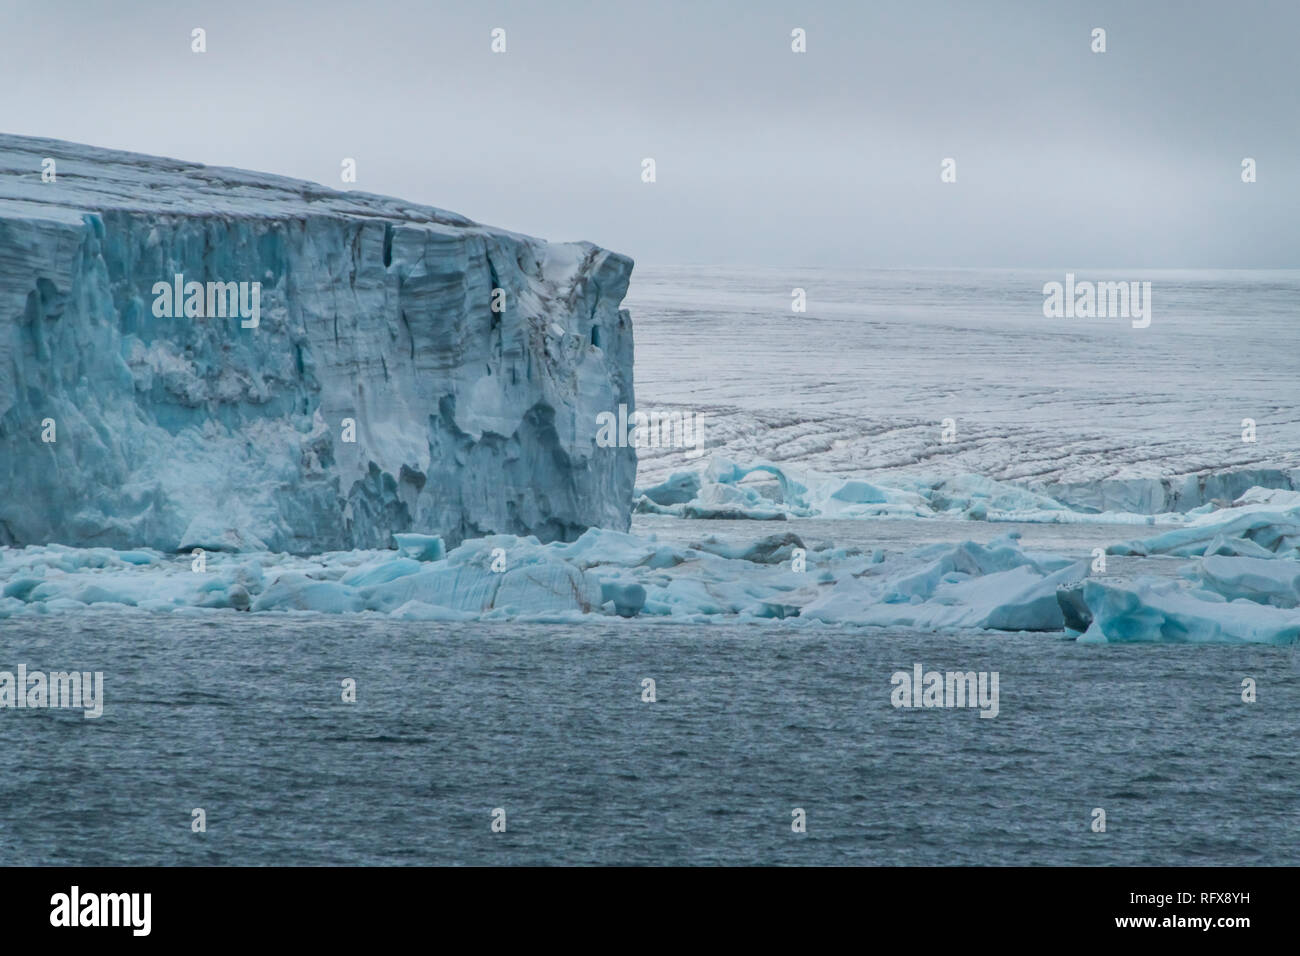 Champ de glace Columbia, massive, de l'île de l'archipel François-Joseph, Oblast d'Arkhangelsk, de l'Arctique, la Russie, l'Europe Banque D'Images